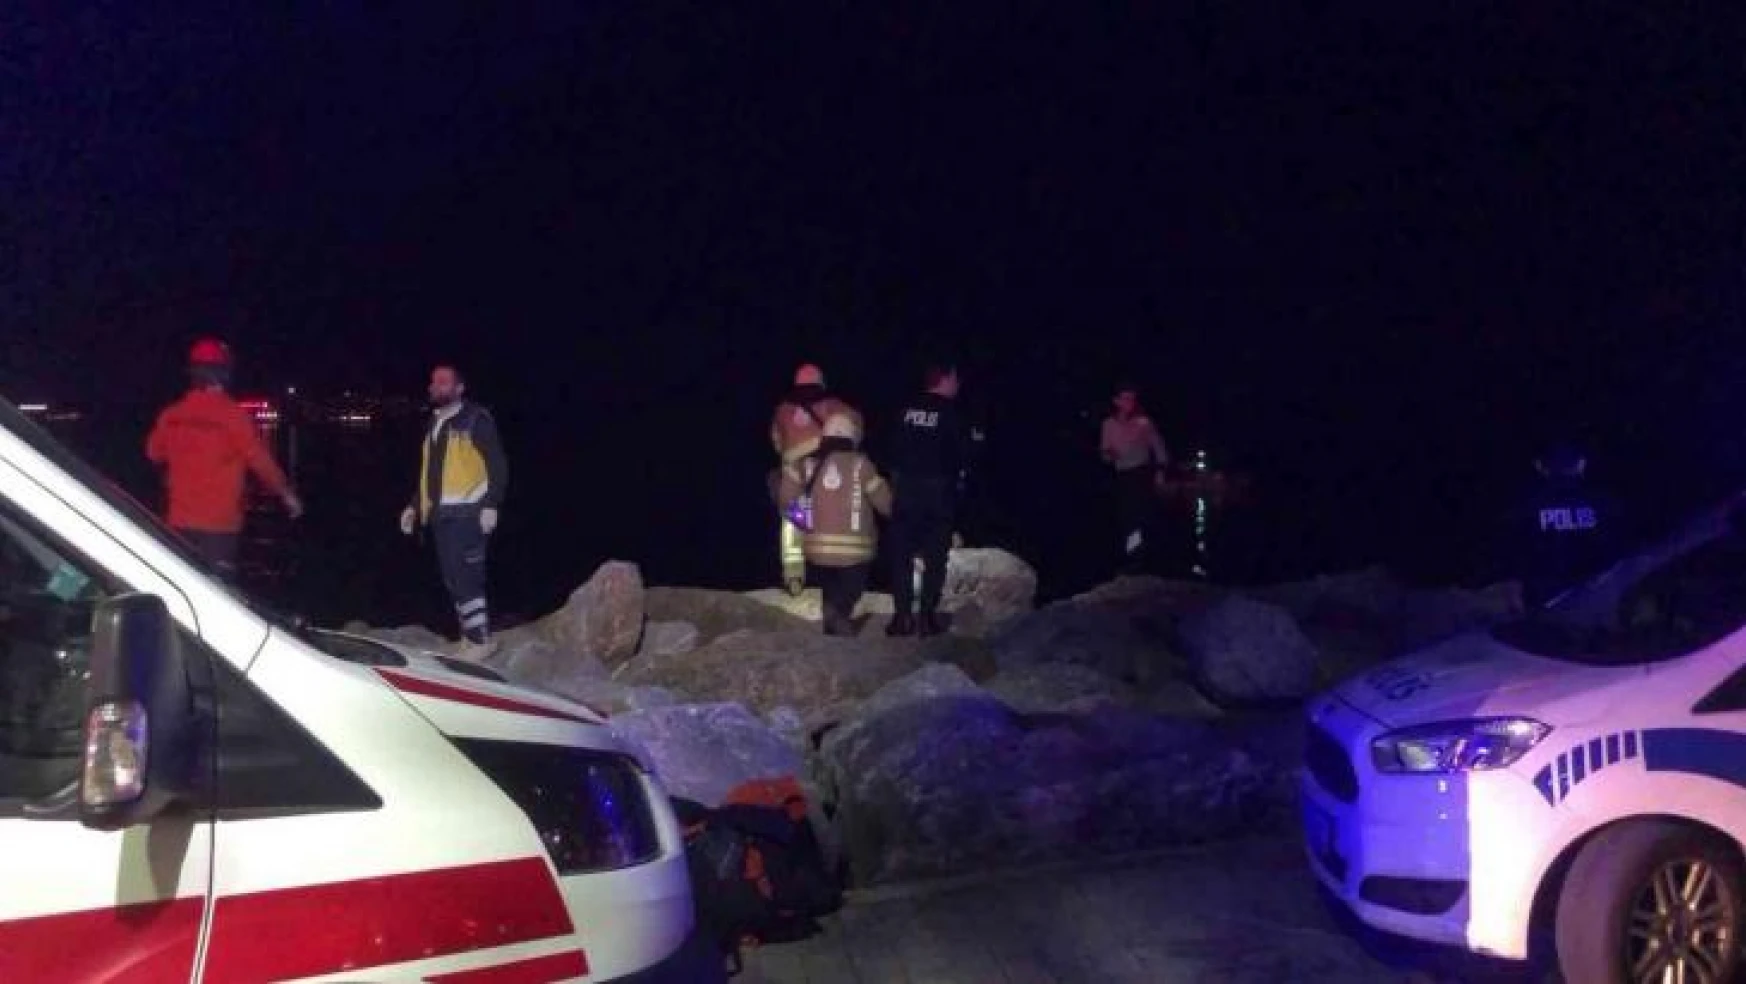 Kadıköy Sahili'nde kayalıklara sıkışan kişi 3 saatte kurtarıldı